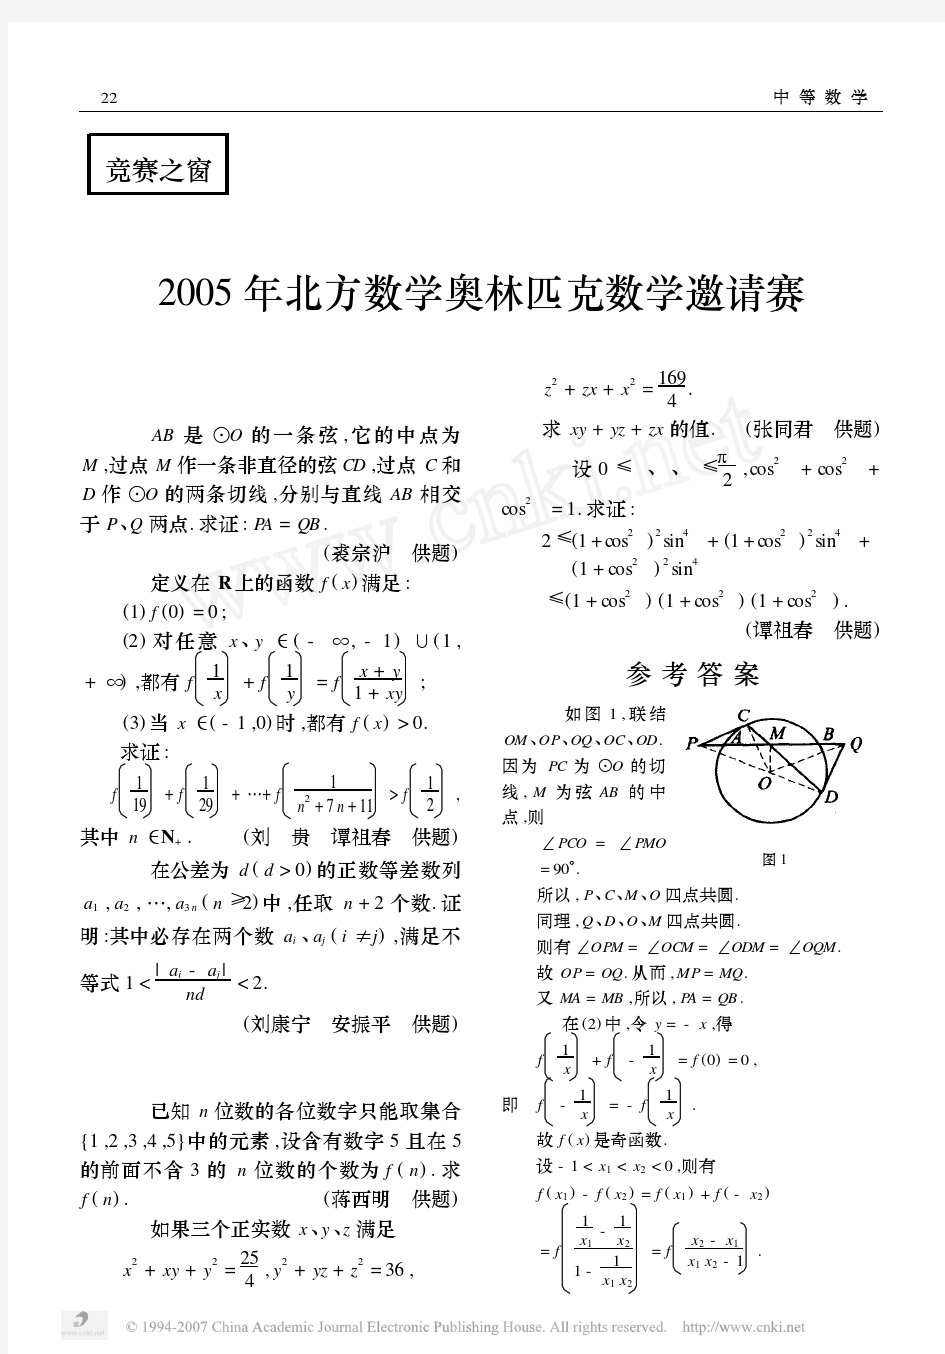 2005-2013年第1-9届北方数学奥林匹克数学试题及解答